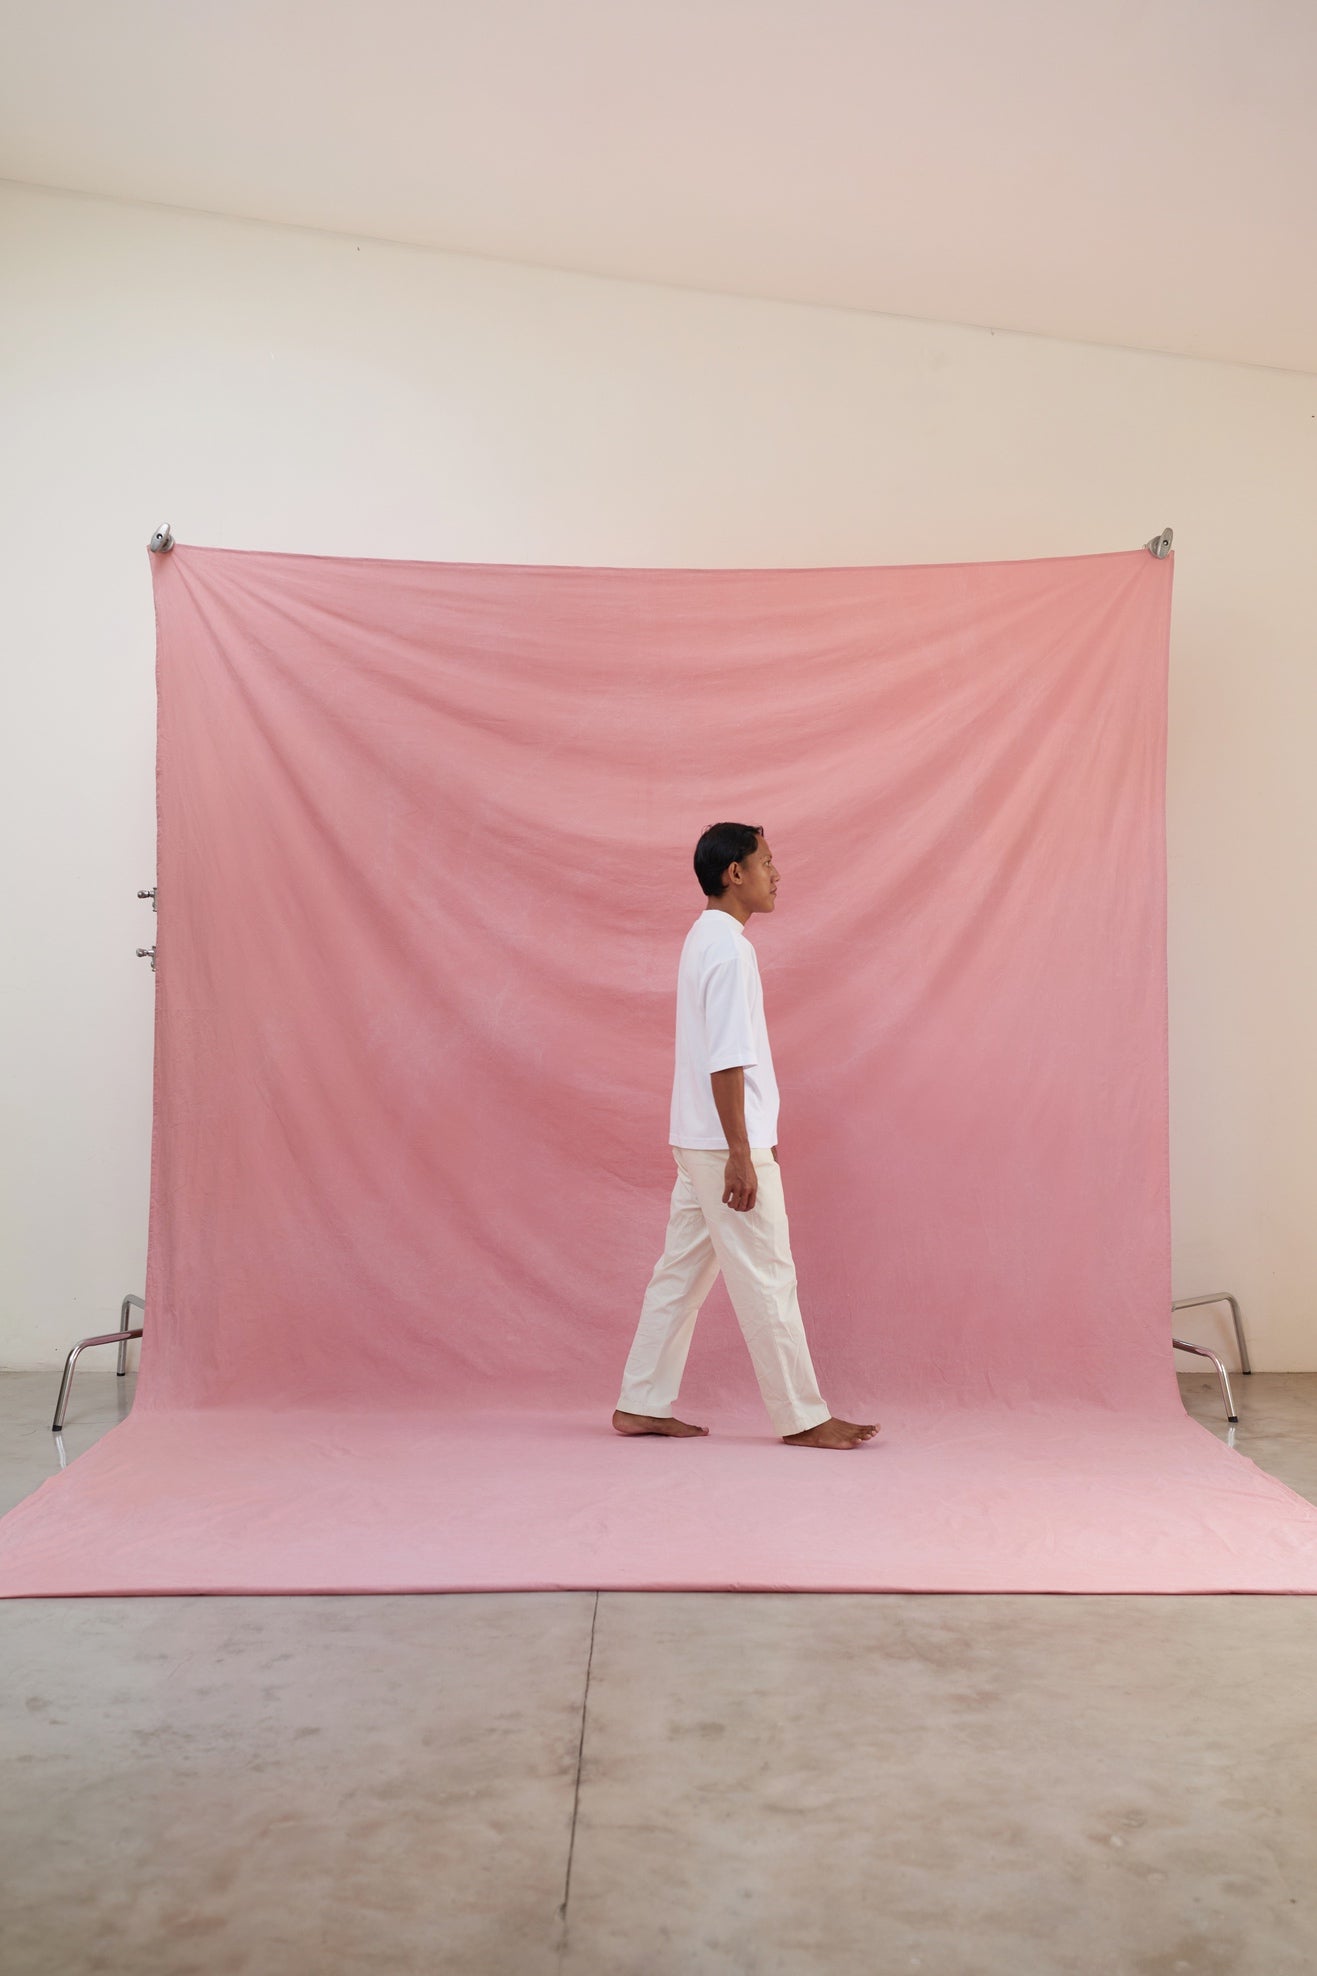 [3x3.75m] Cotton Backdrop Blush Pink